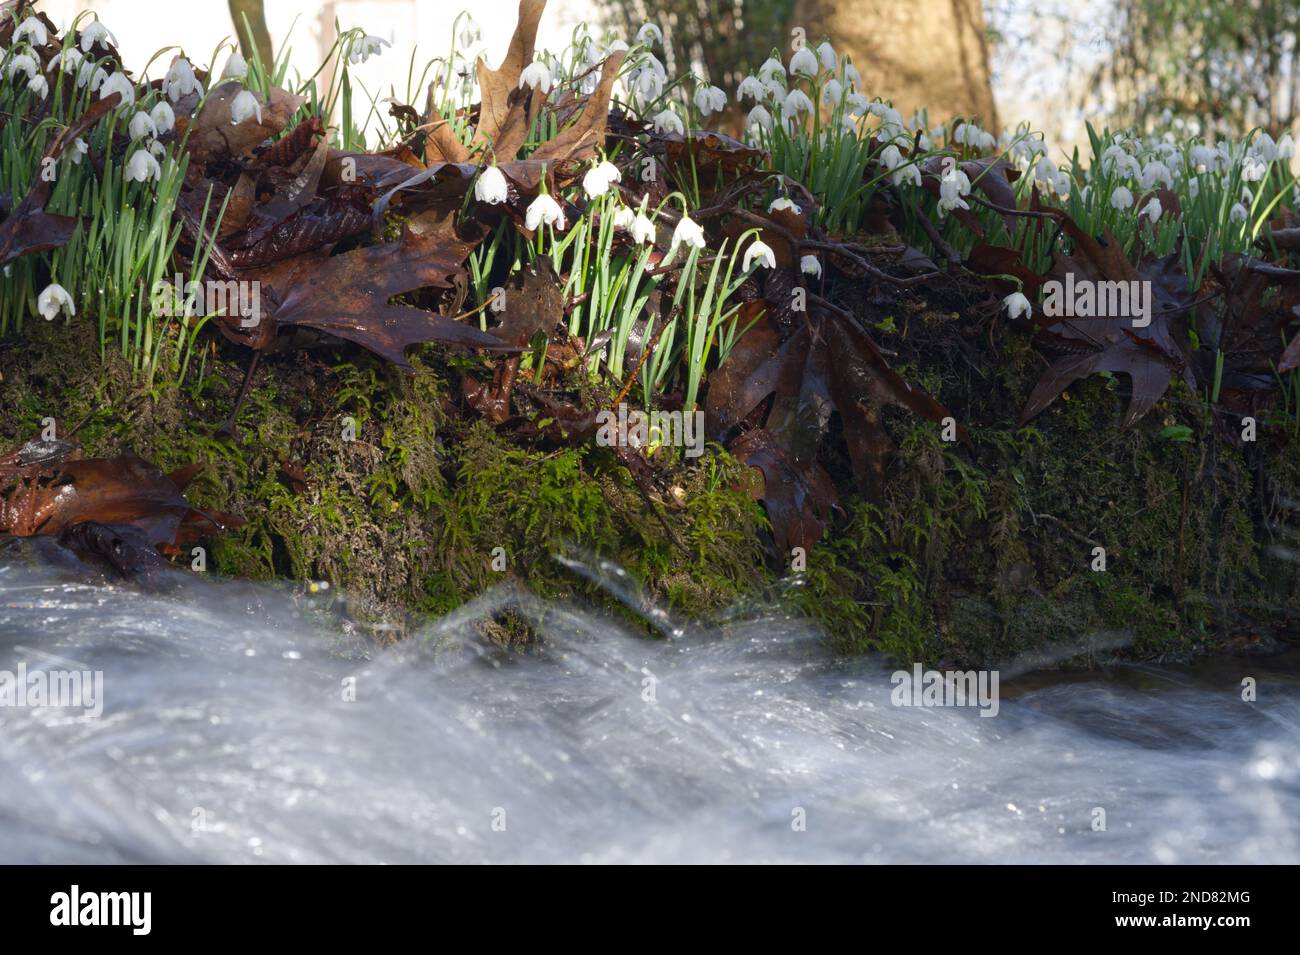 Una banca di nevicate invernali fiorite, galanthus nivalis, insieme a un flusso in rapido movimento in un giardino boschivo UK febbraio Foto Stock